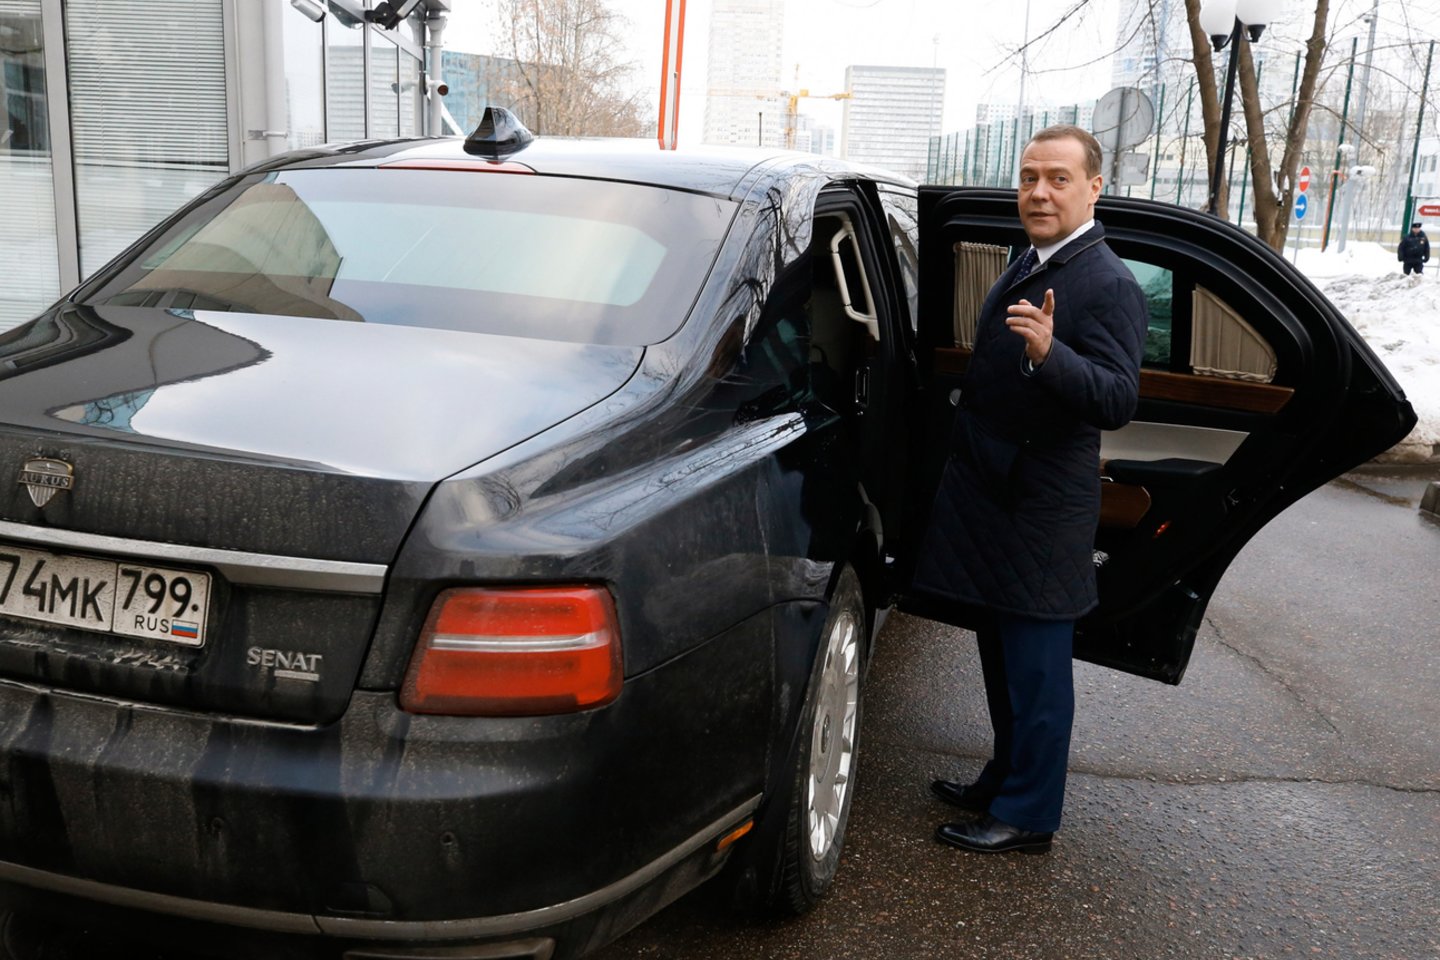 Pranešime teigiama, kad S. Medvedeva pasinaudojo vienai Belizo ofšorinei įmonei priklausančiu lėktuvu per mažiausiai 11 asmeninių kelionių, įskaitant piligriminę kelionę į Jeruzalę, nors neturėjo teisės į asmeninį orlaivį.<br>Sputnik/Scanpix nuotr.